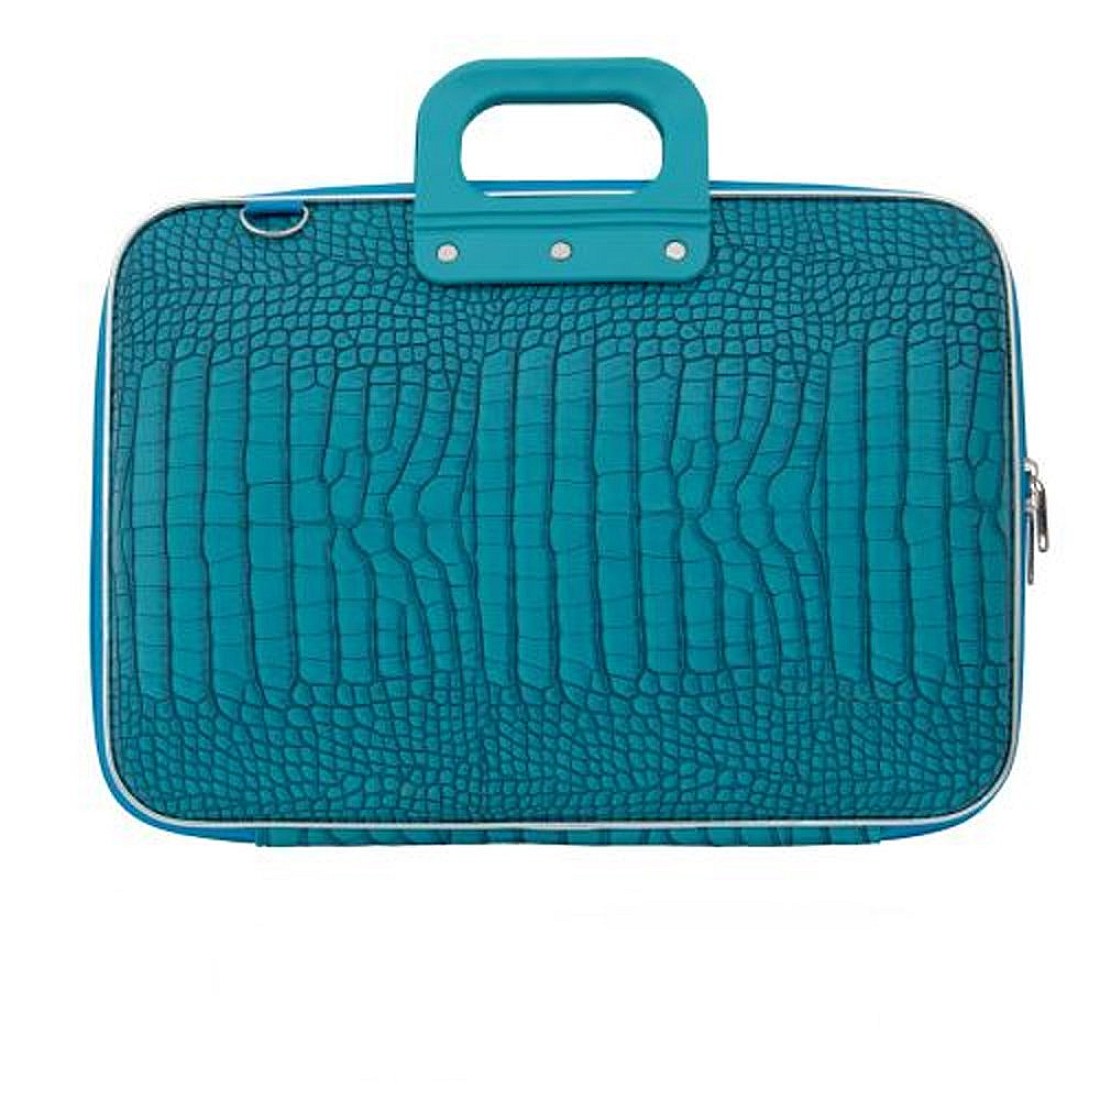 verstoring Intentie Hoofdstraat Bombata Classic Cocco (15.6'') Turquoise Laptop Briefcase | Appelboom.com